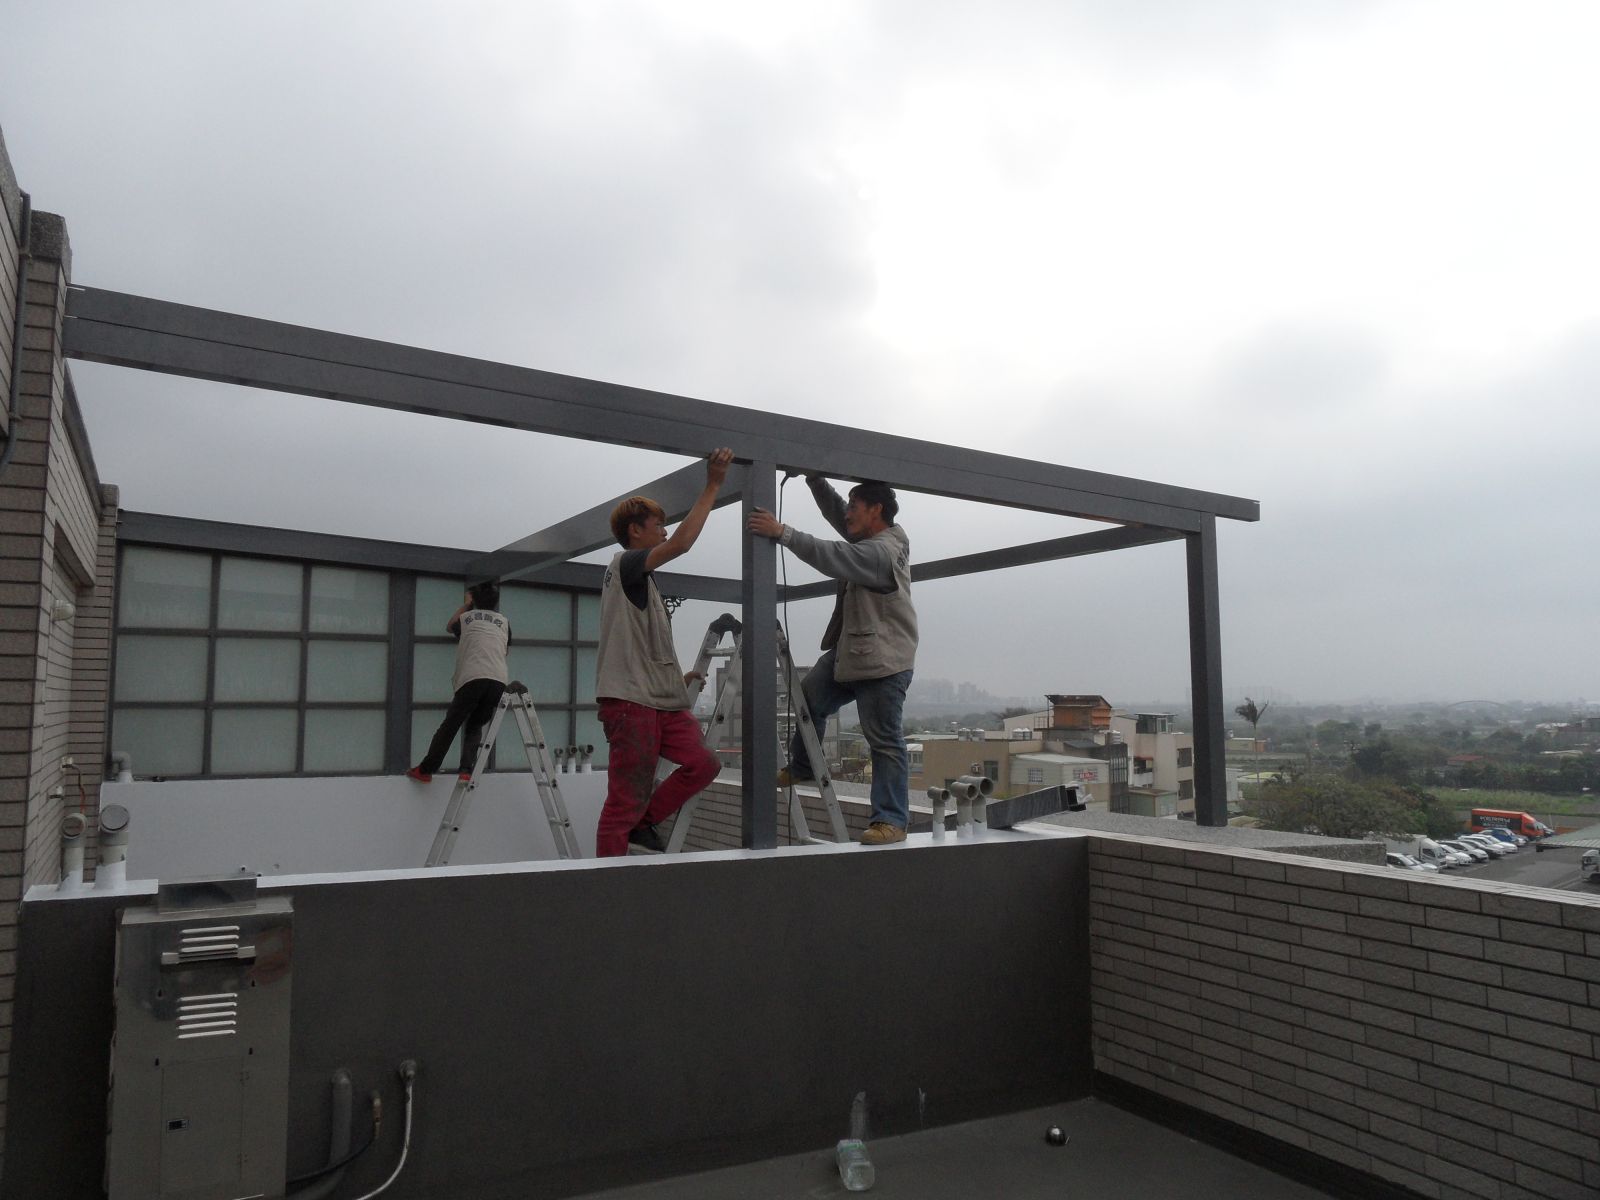 本工程為頂樓前陽台,材料顏色採用鐵灰色系列